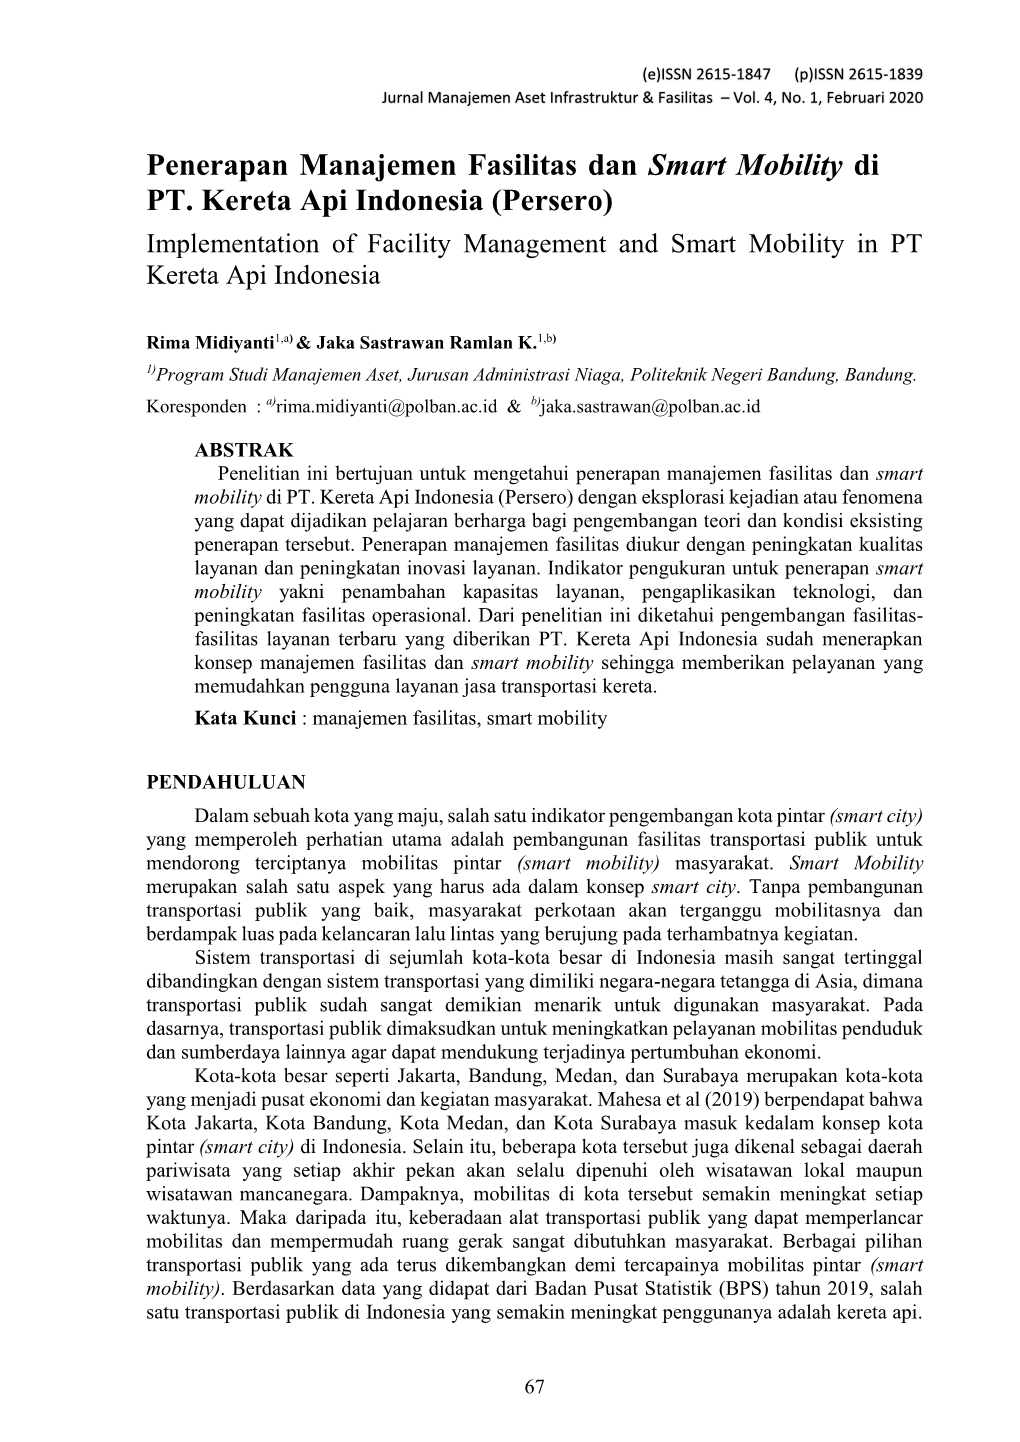 Penerapan Manajemen Fasilitas Dan Smart Mobility Di PT